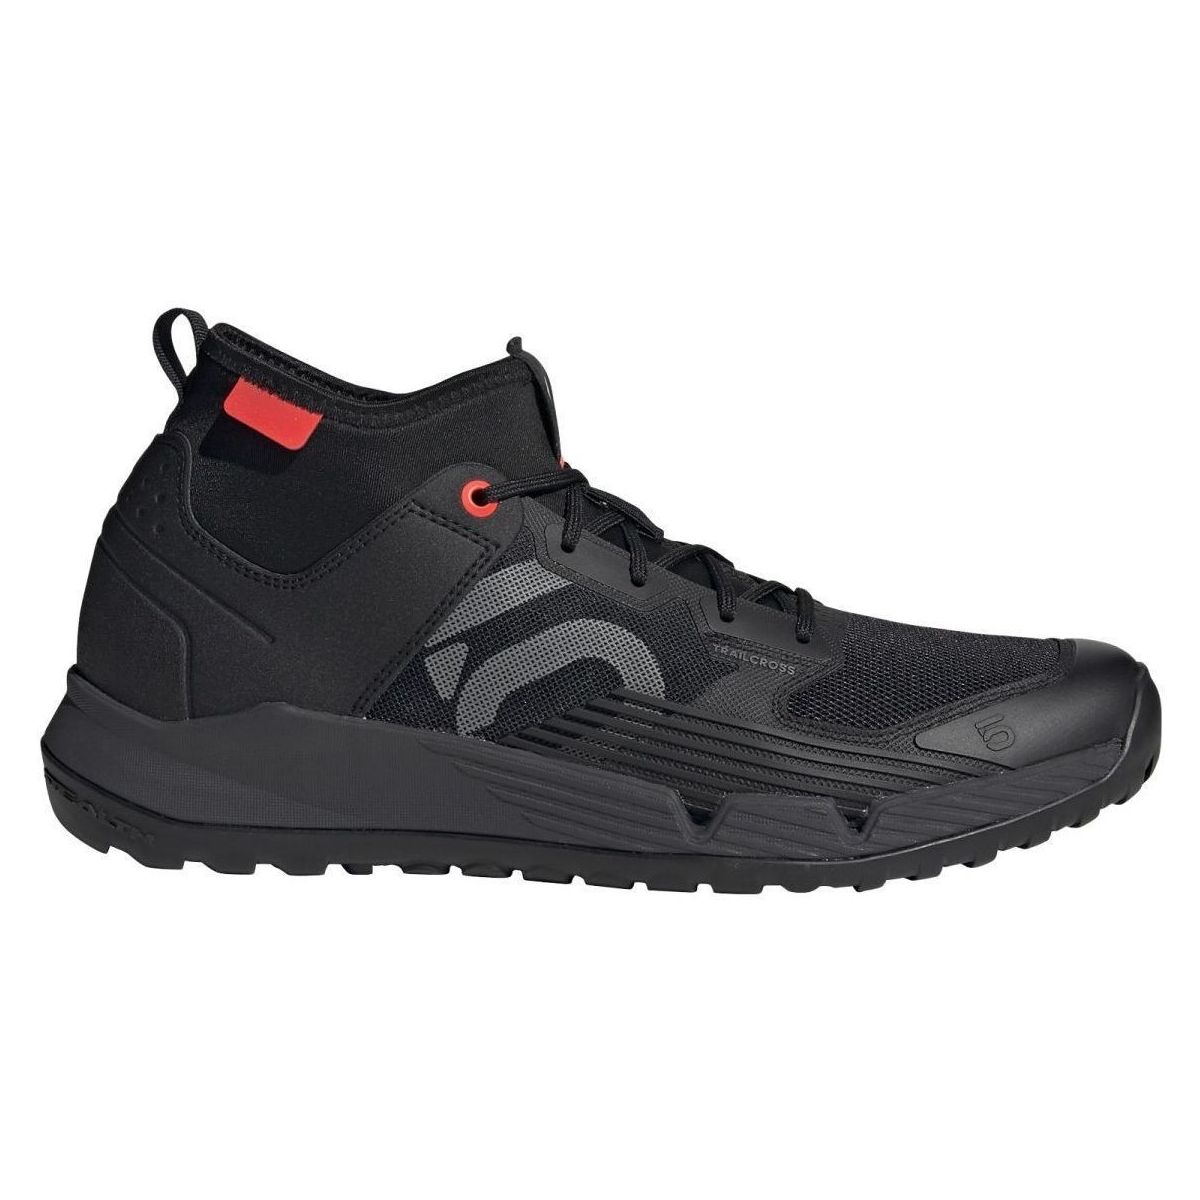 Zapatillas para pedales de plataforma Five Ten TrailCross XT negro para enduro y cicloalpinismo